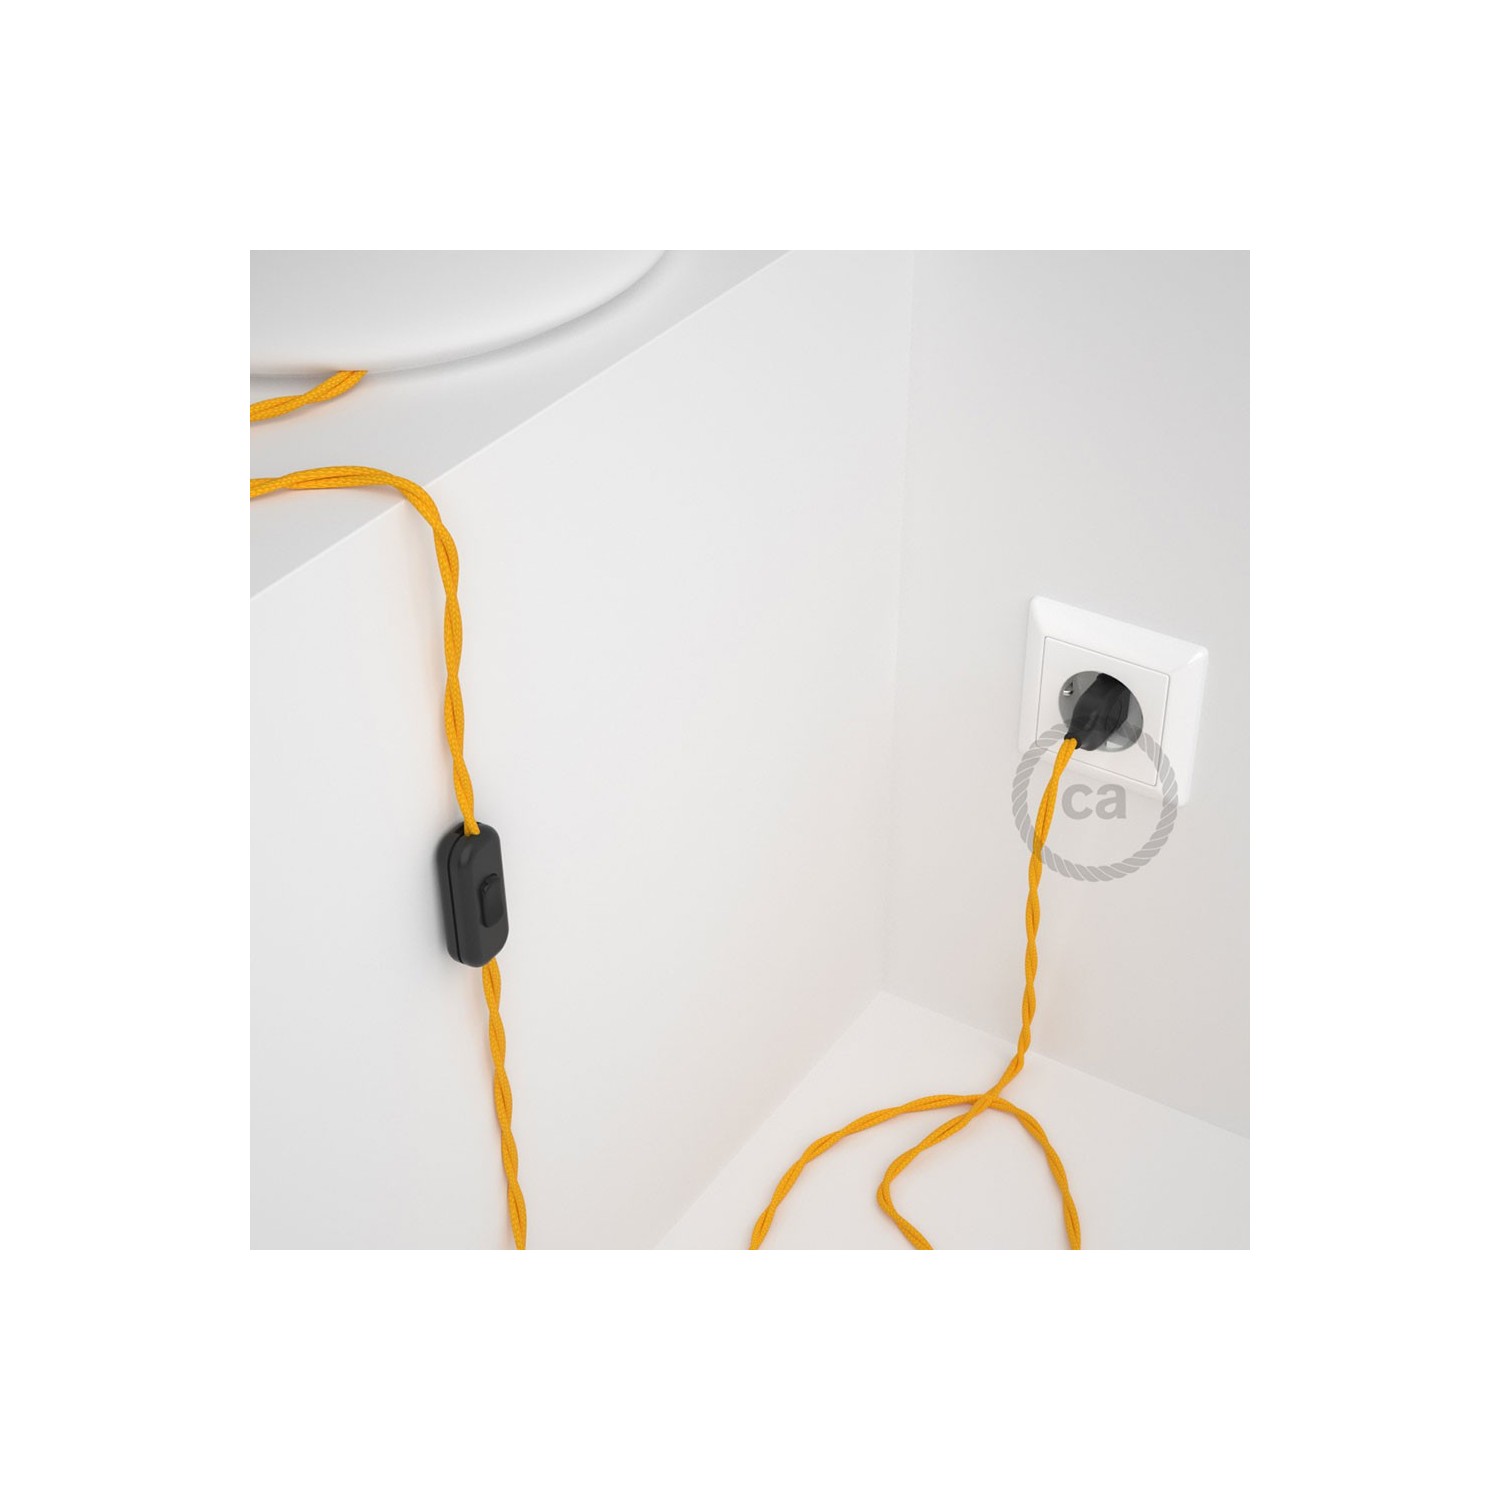 Cabo para candeeiro de mesa, TM10 Amarelo Seda Artificial 1,80 m. Escolha a cor da ficha e do interruptor.